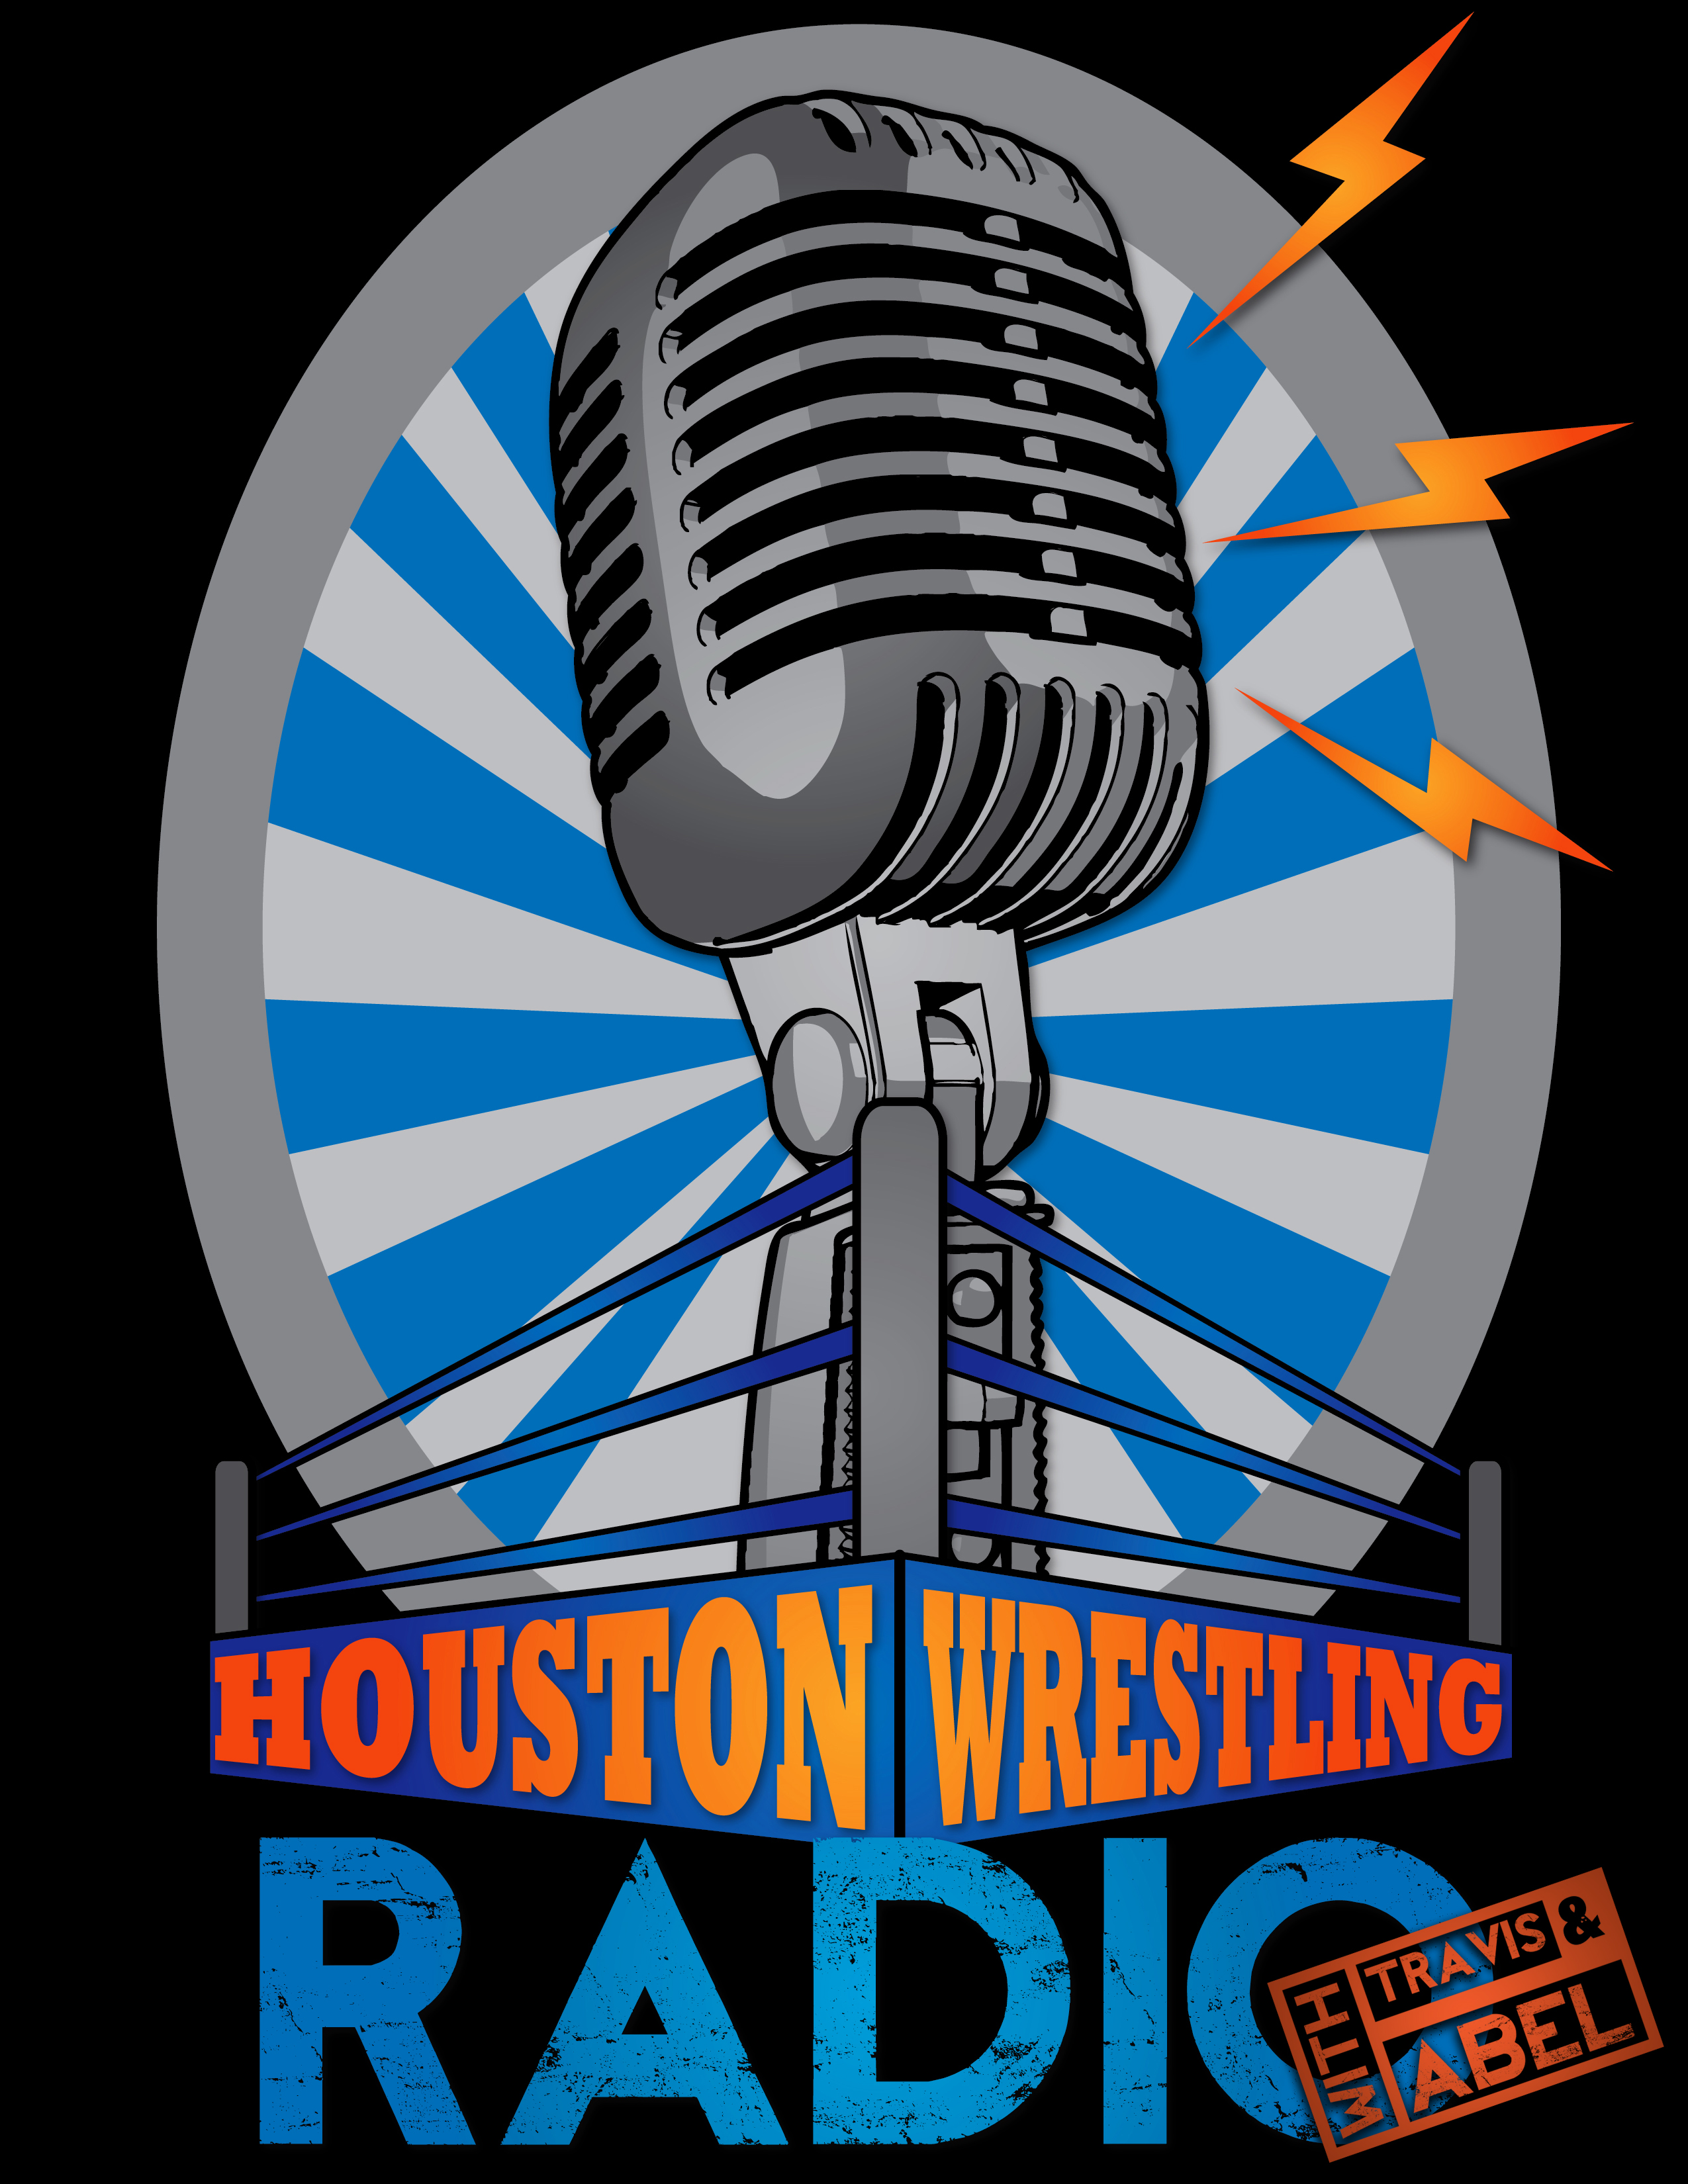 HWR #78 04/15/14 WrestleThon Revolution 